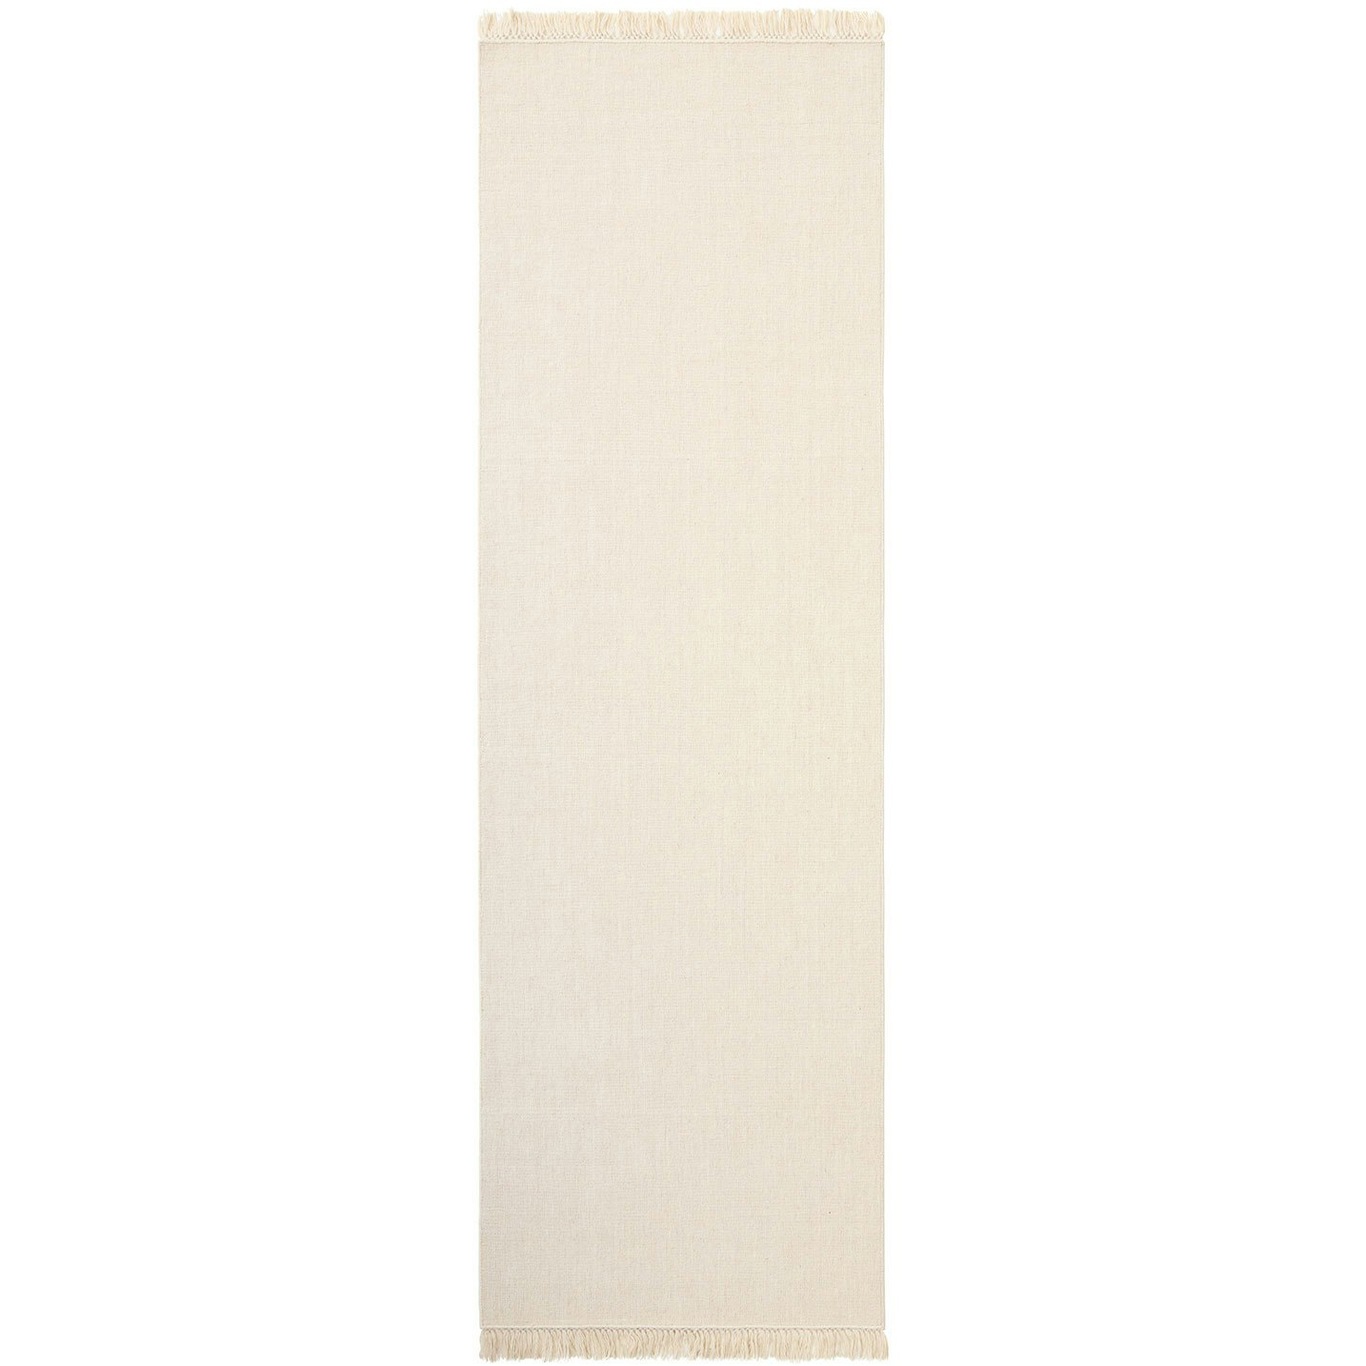 Nanda Teppe Off-white, 170x240 cm